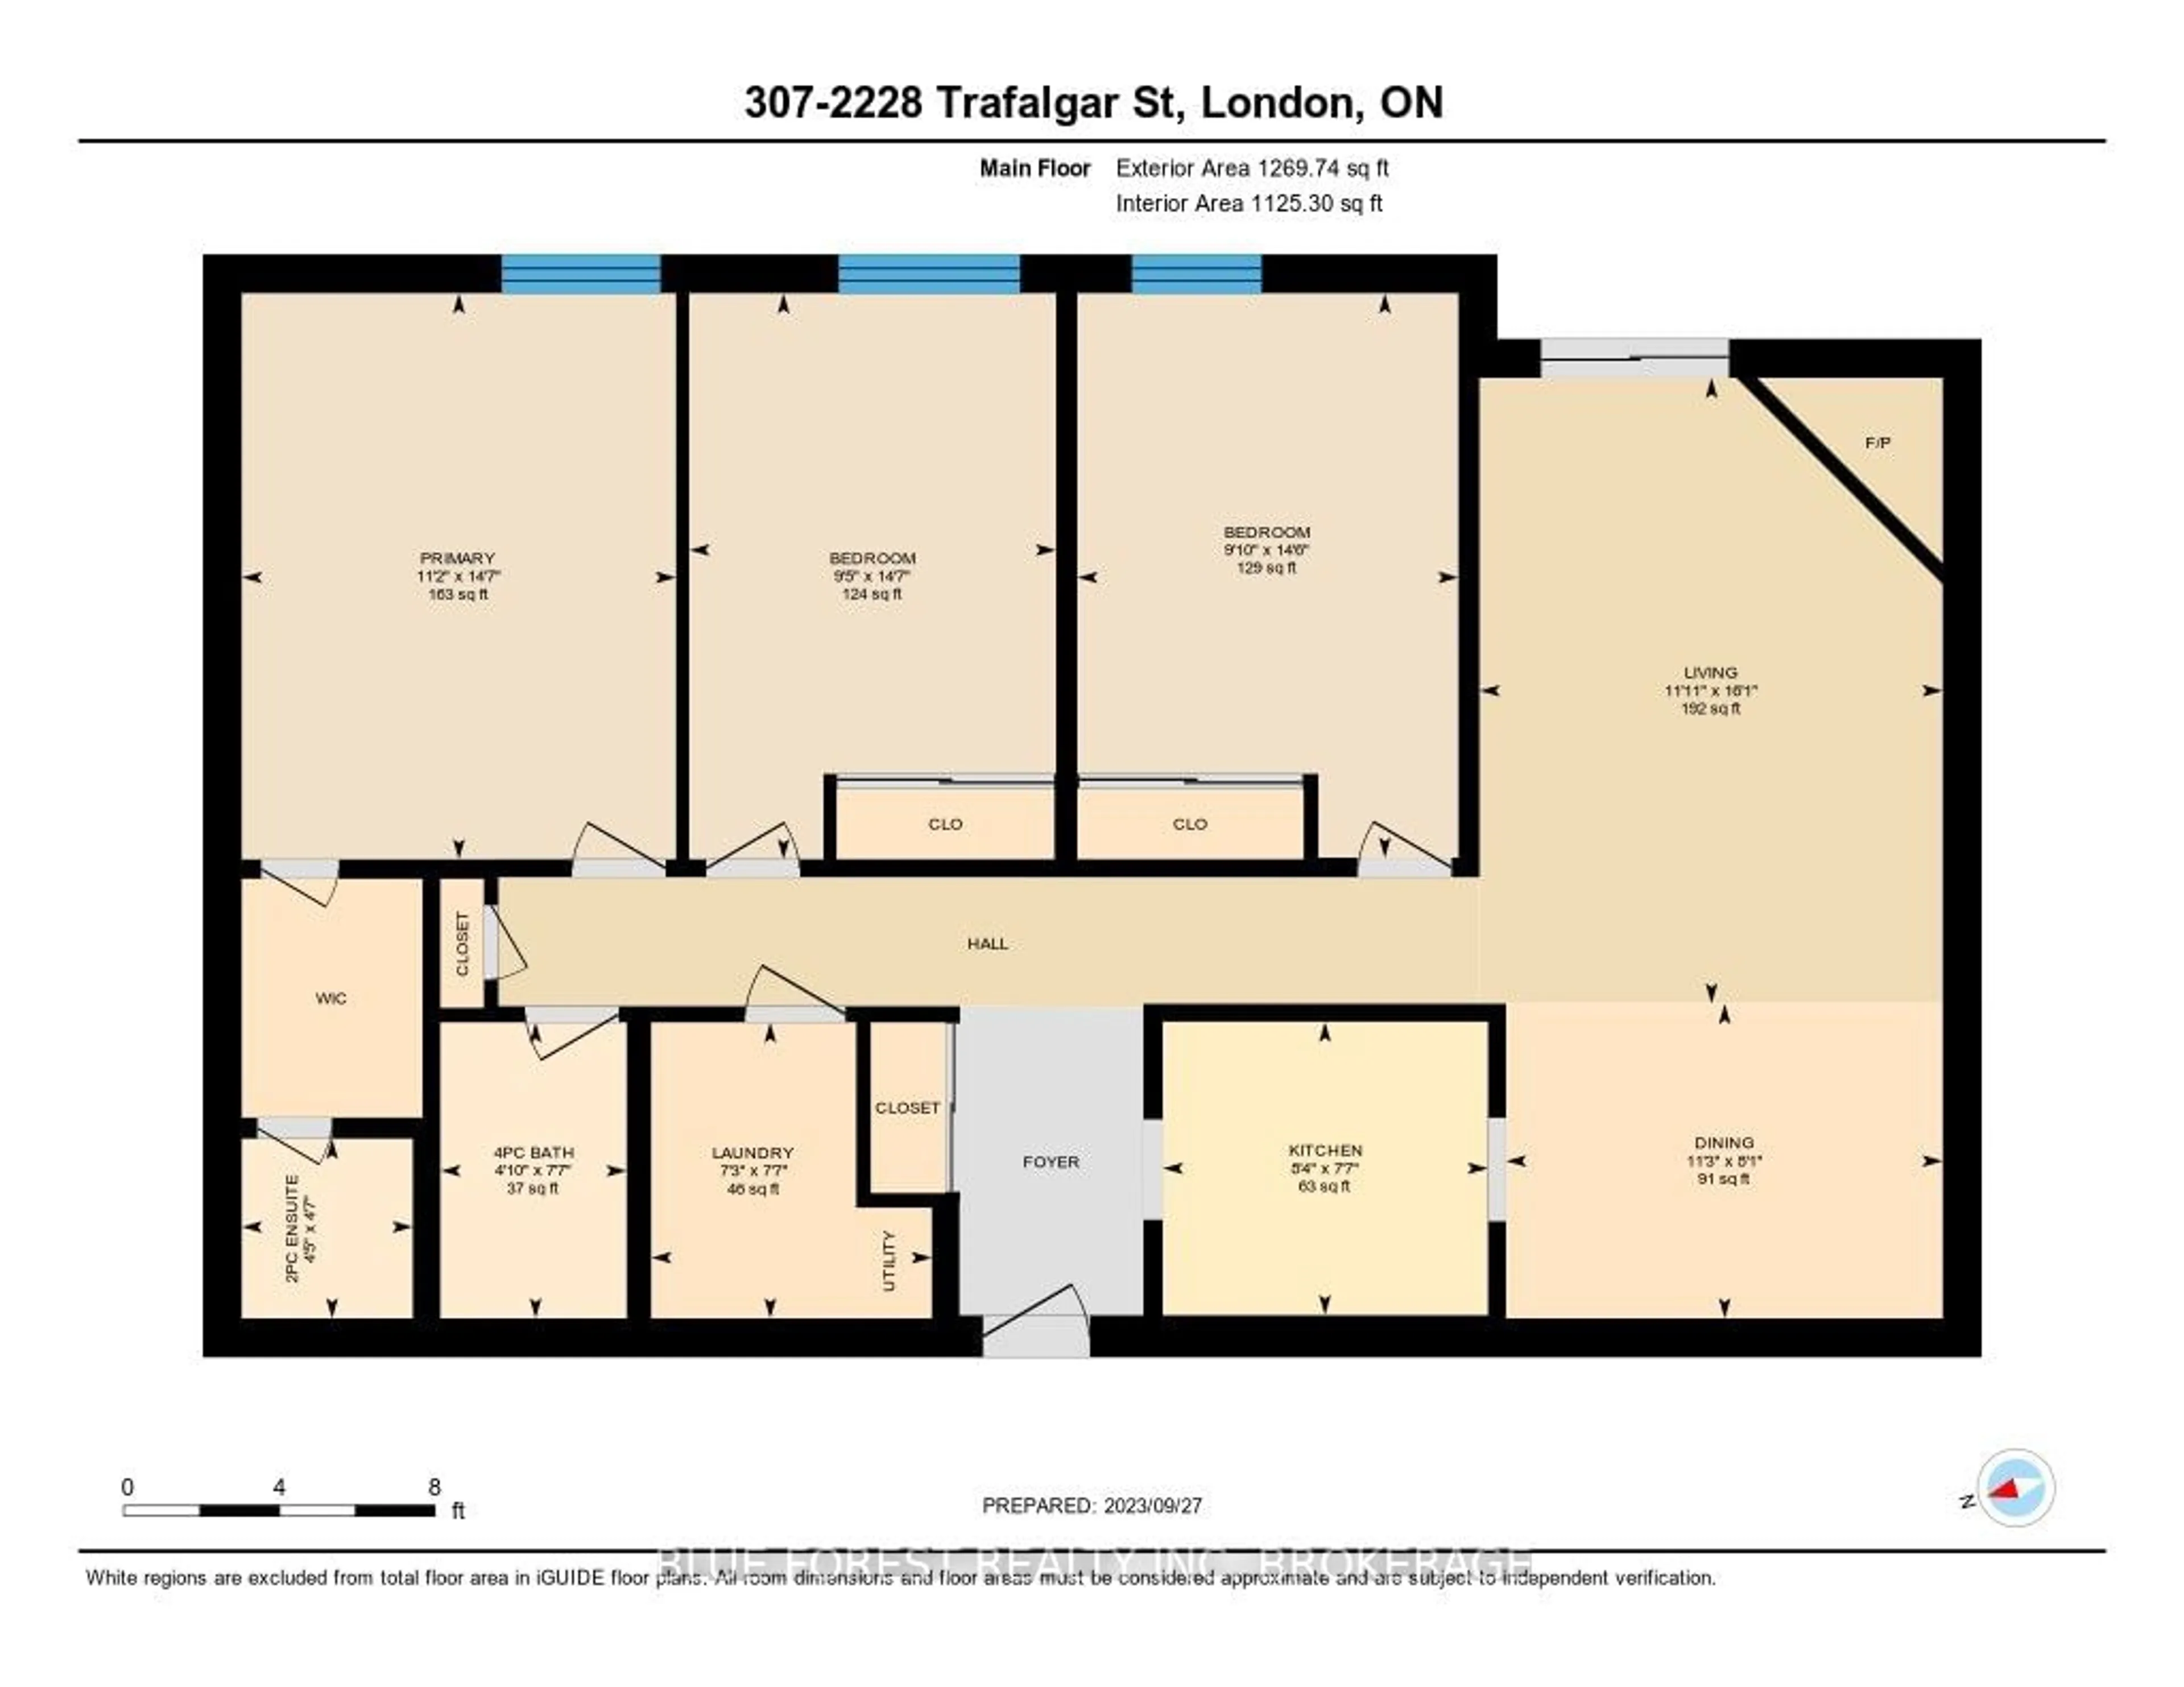 Floor plan for 2228 Trafalgar St #307, London Ontario N5V 4J8